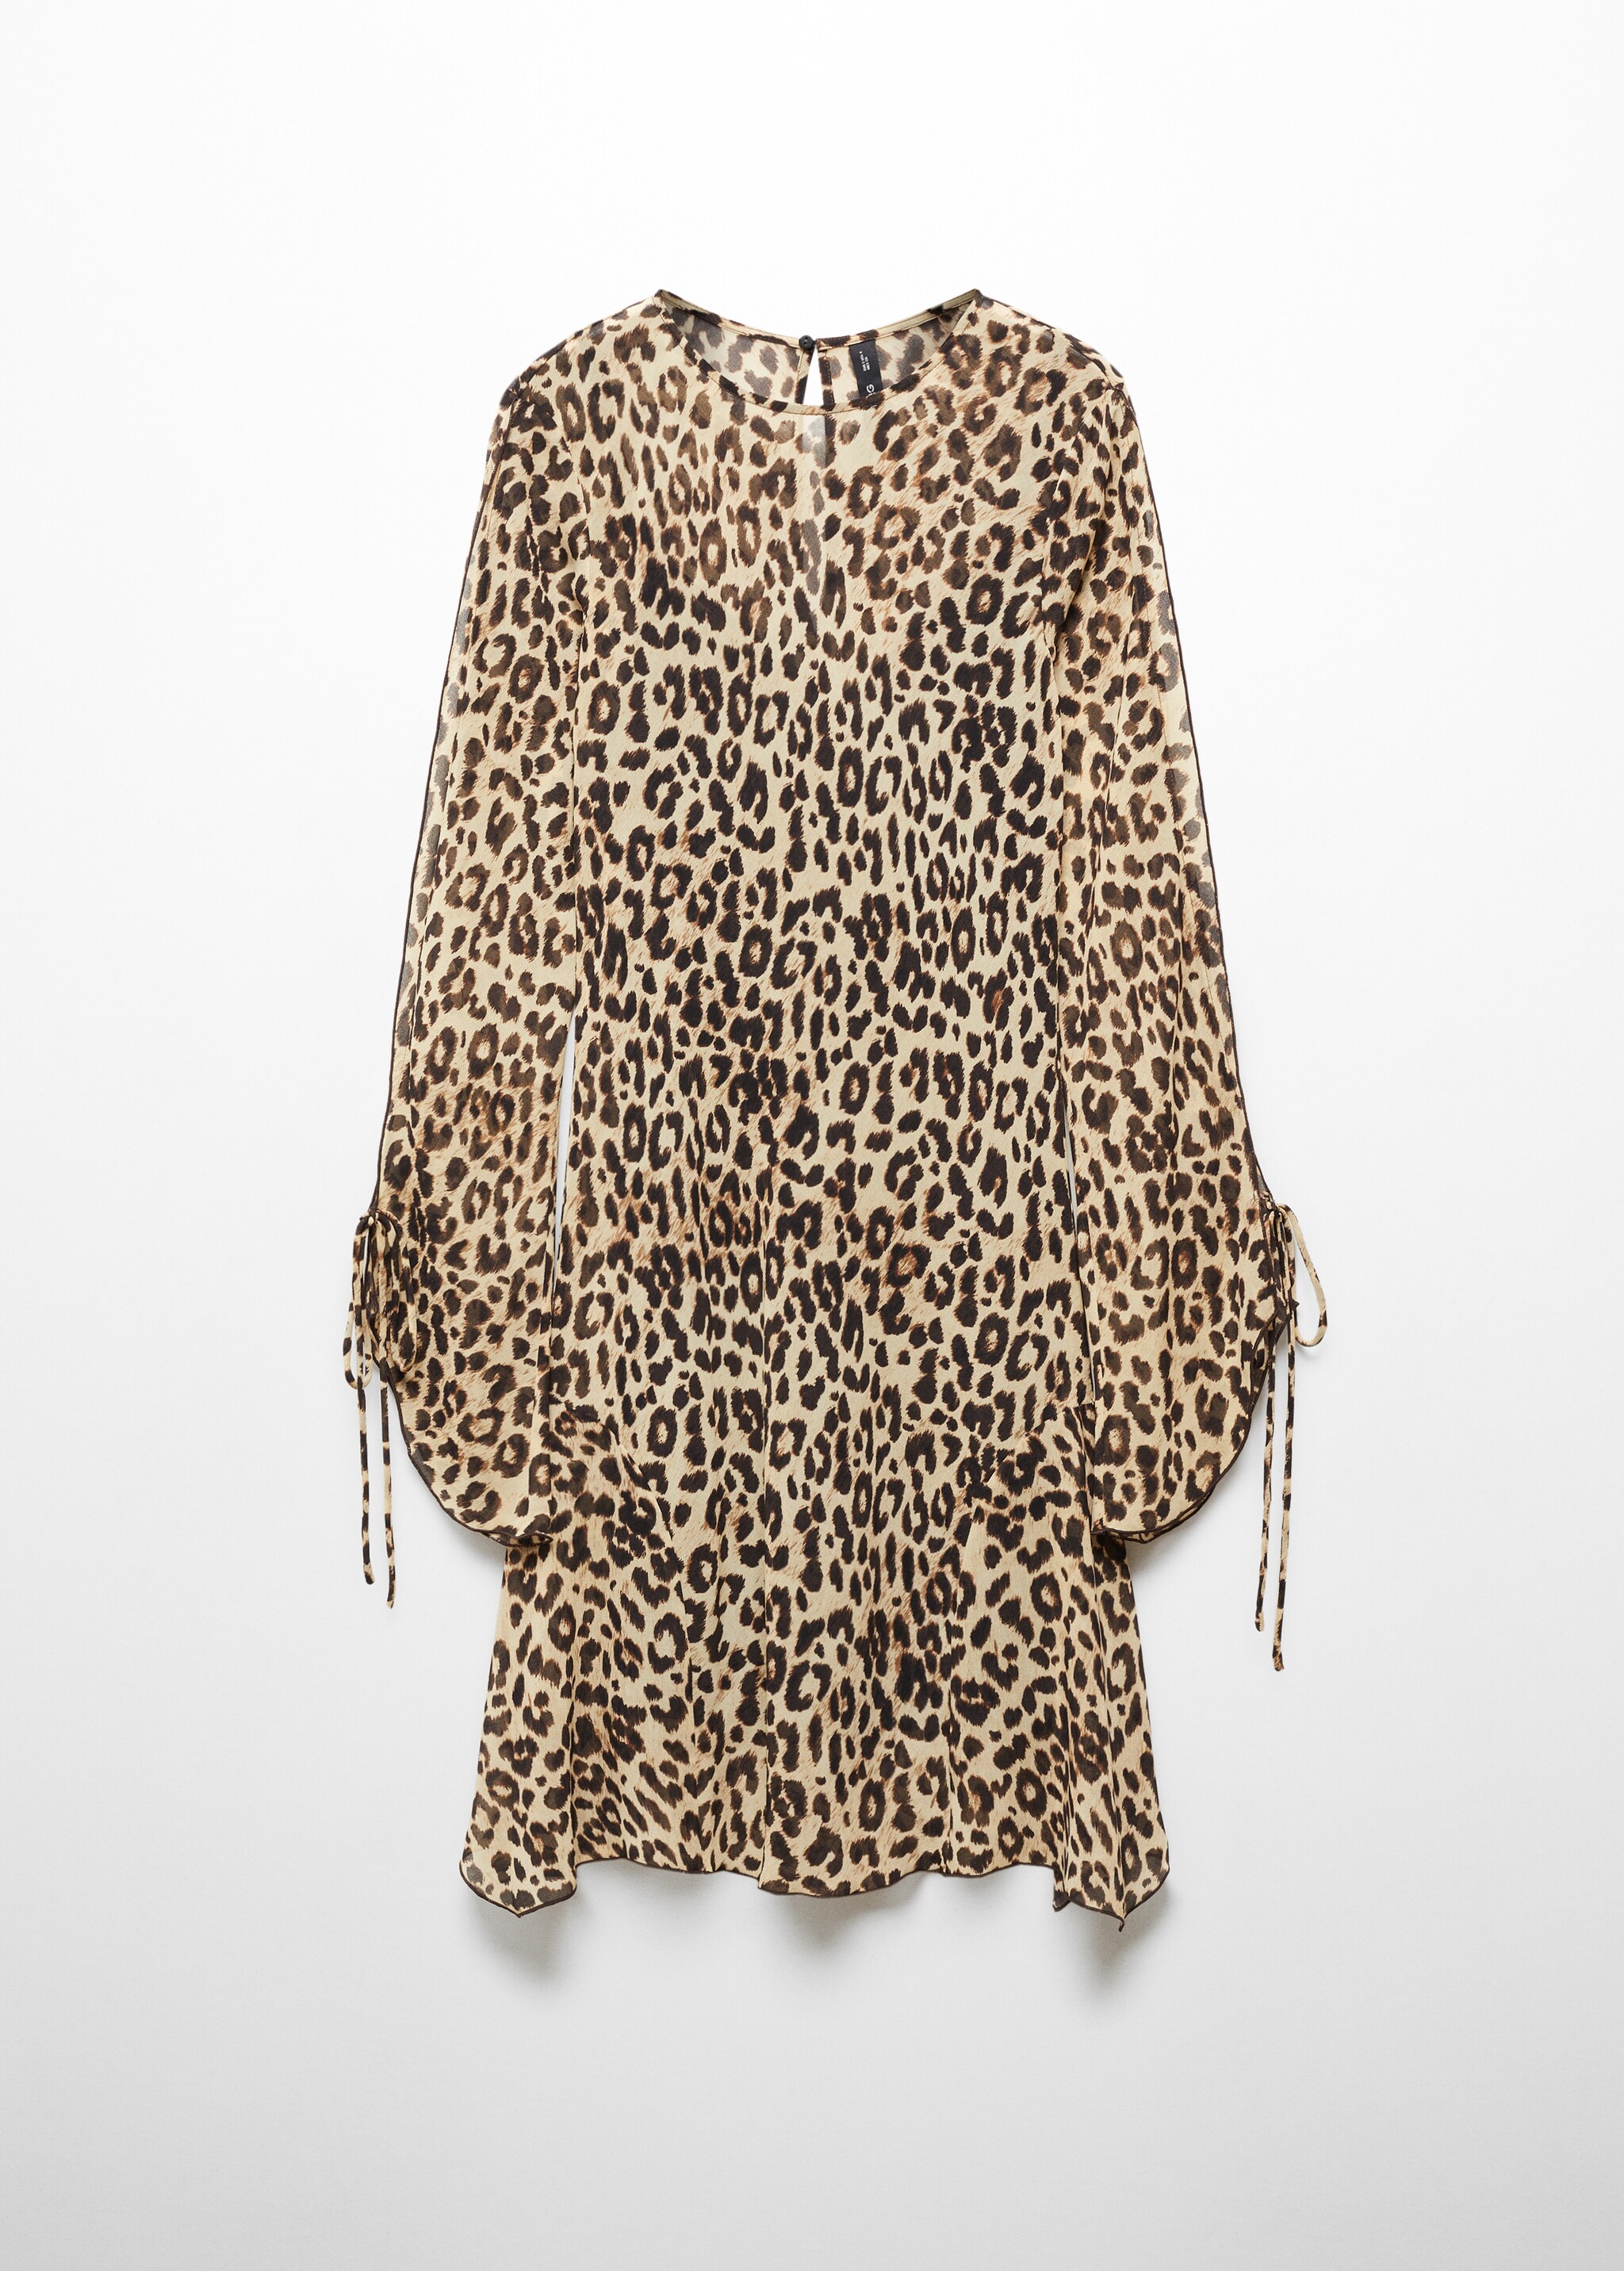 Леопардовое платье с расклешенными рукавами - Изделие без модели